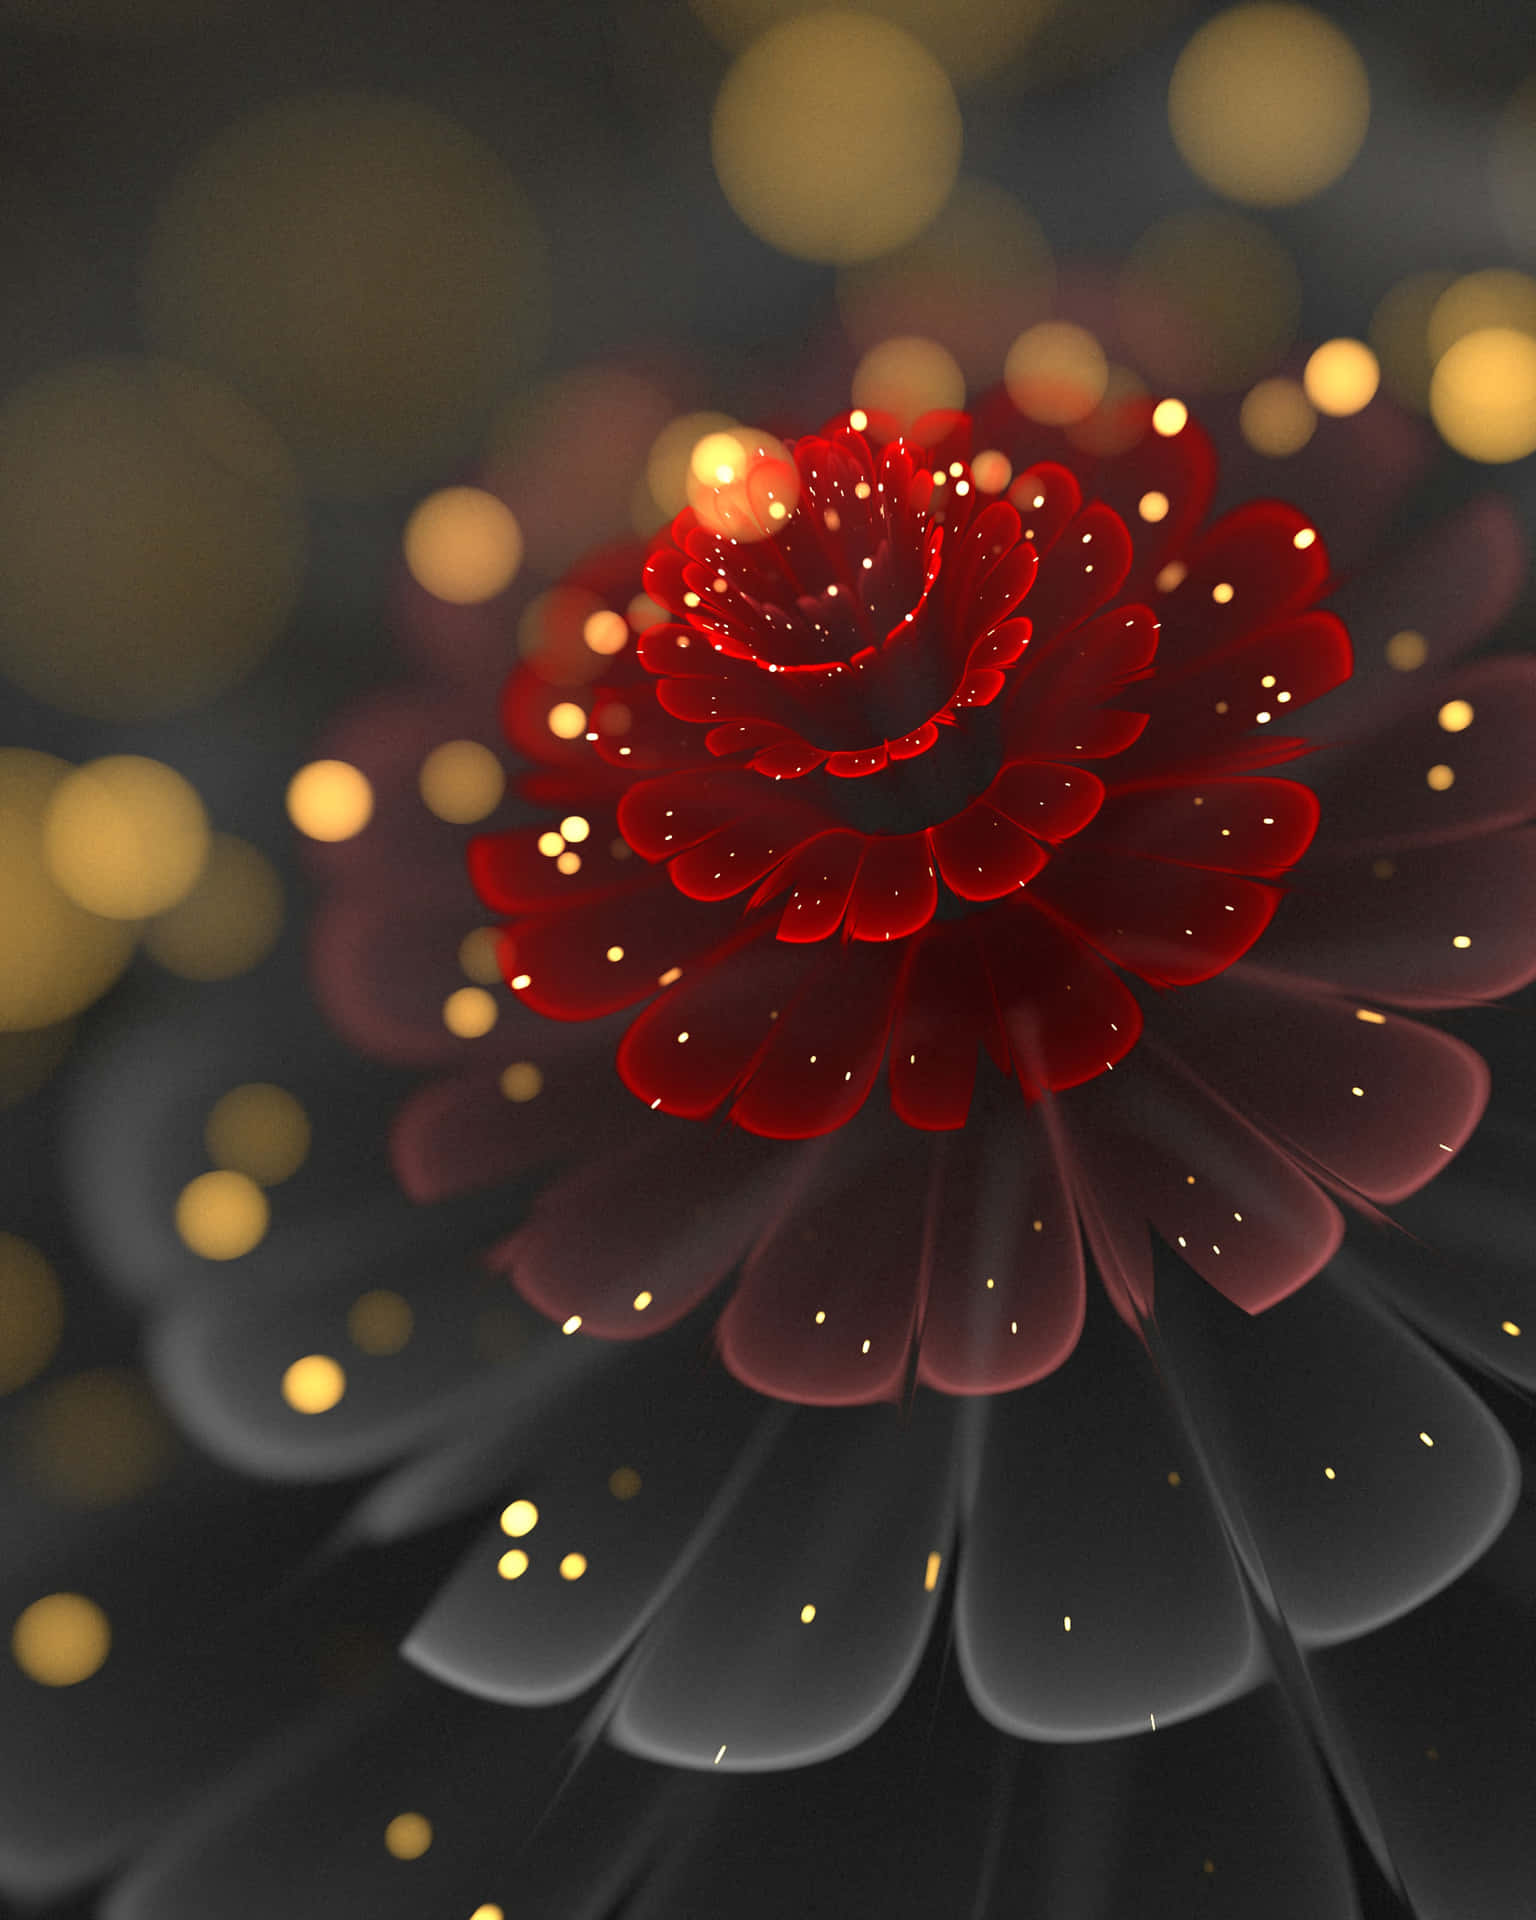 En rød blomst med guldflager for en poppe af sofistikation. Wallpaper